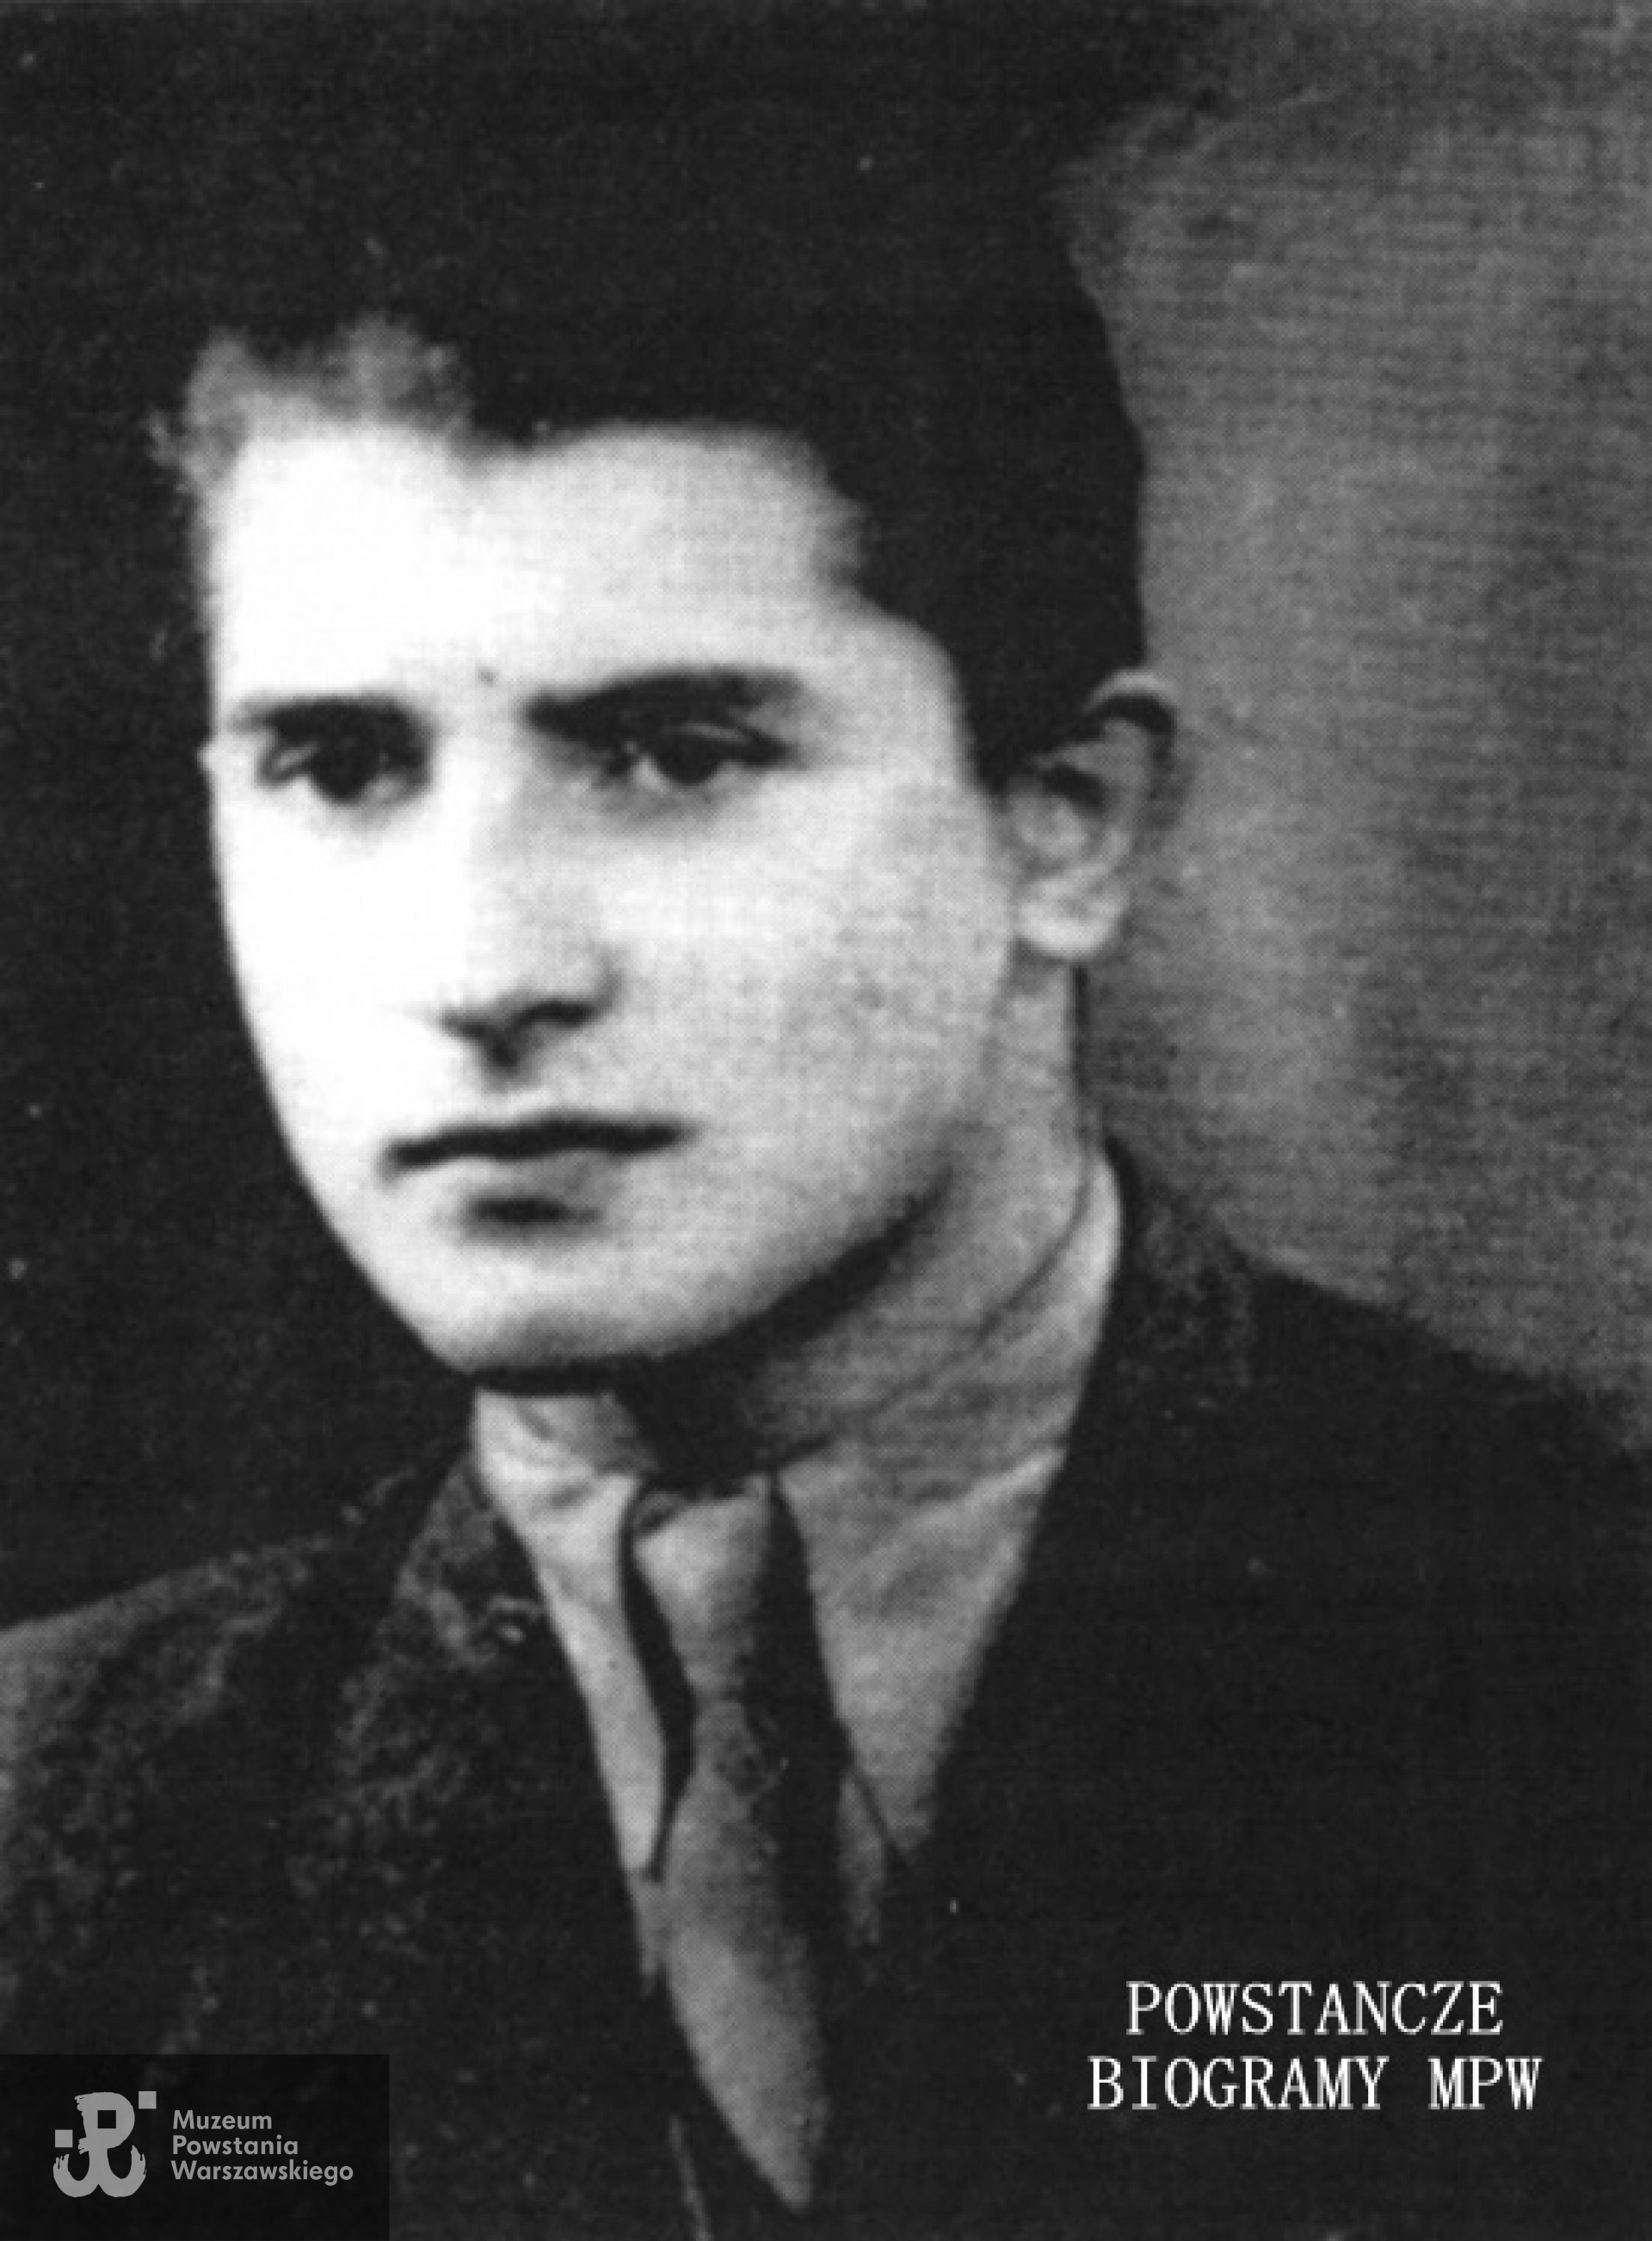 Mieczysław Chackiewicz - 1945 r. Fot. archiwum rodzinne